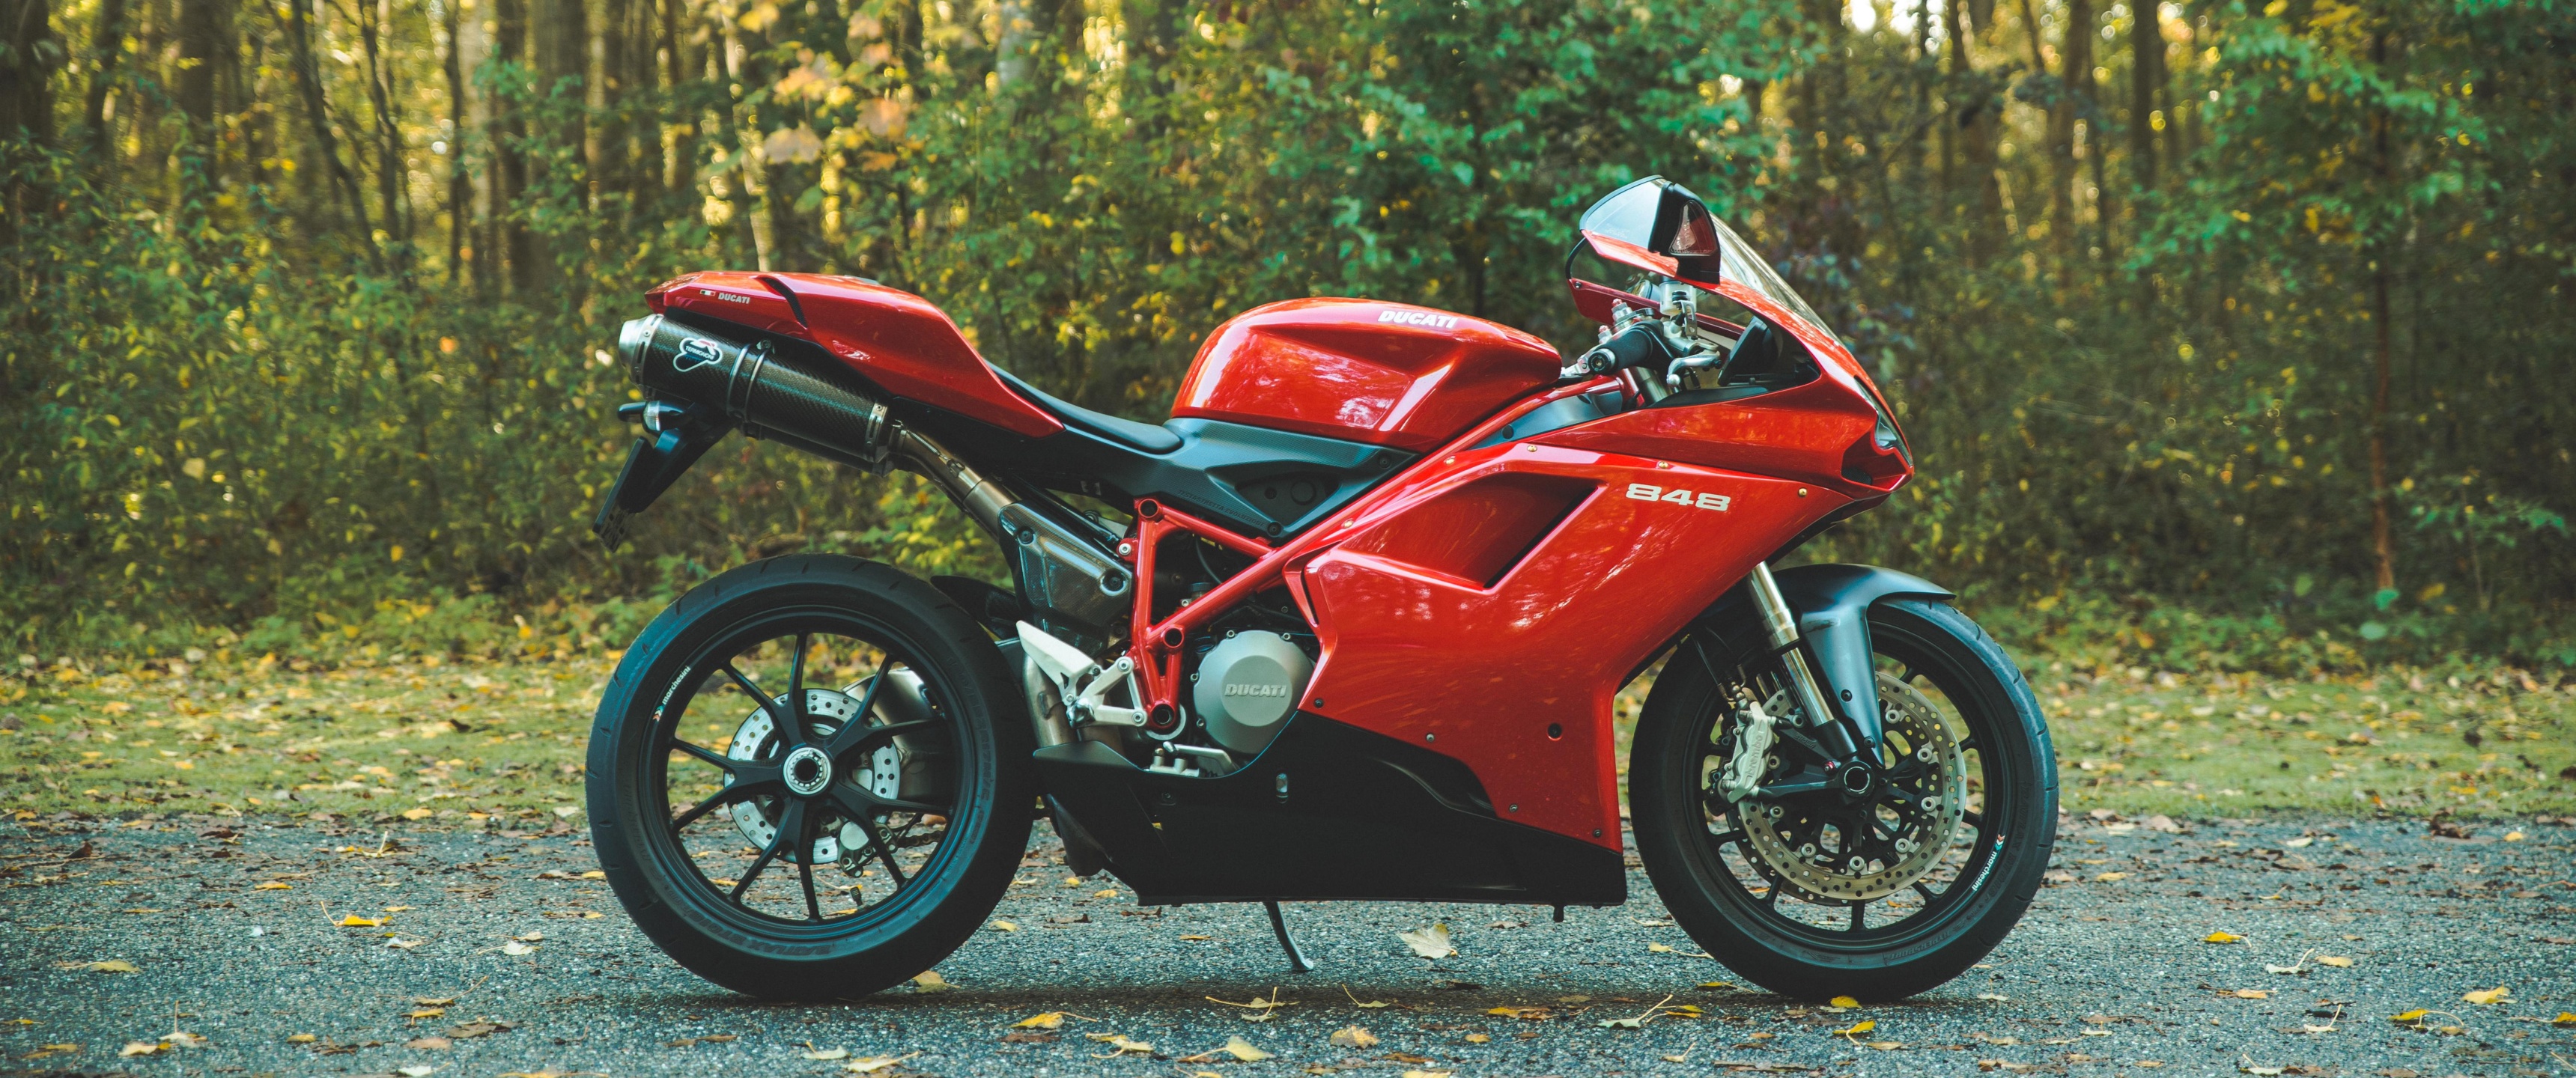 Vehicle Motorcycle Ducati Leaves 3440x1440